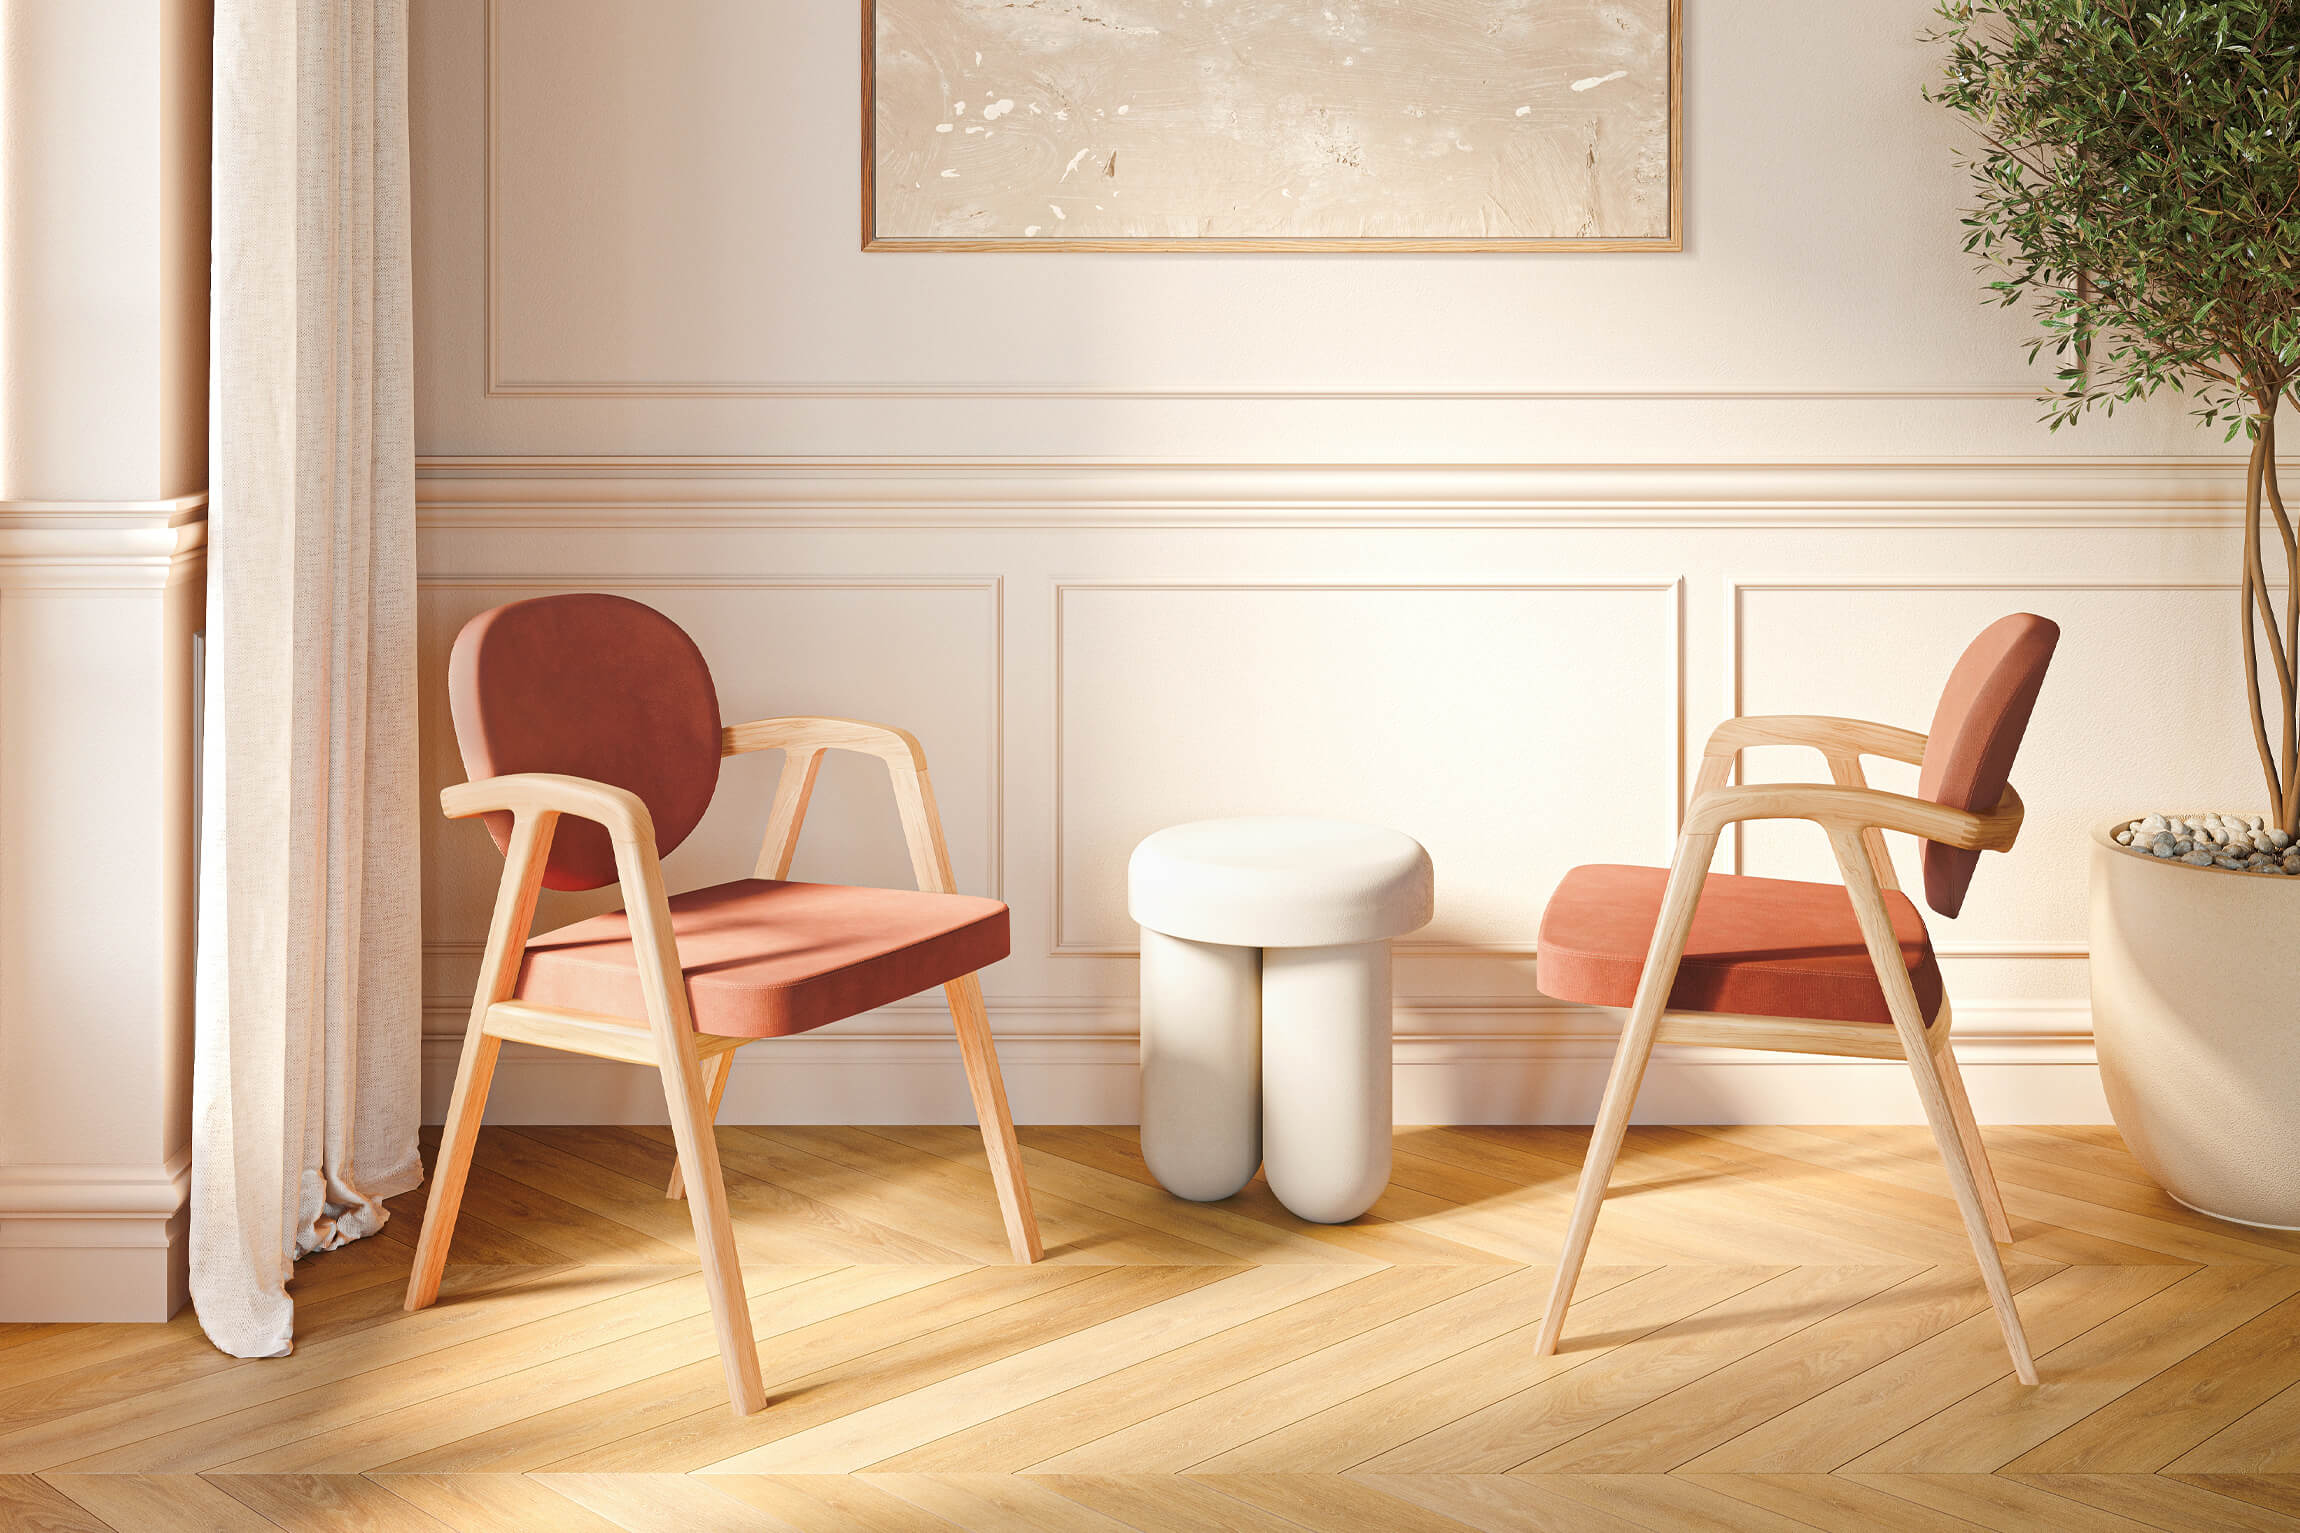 Lifestyle 3D Visualization of Stylish Chairs